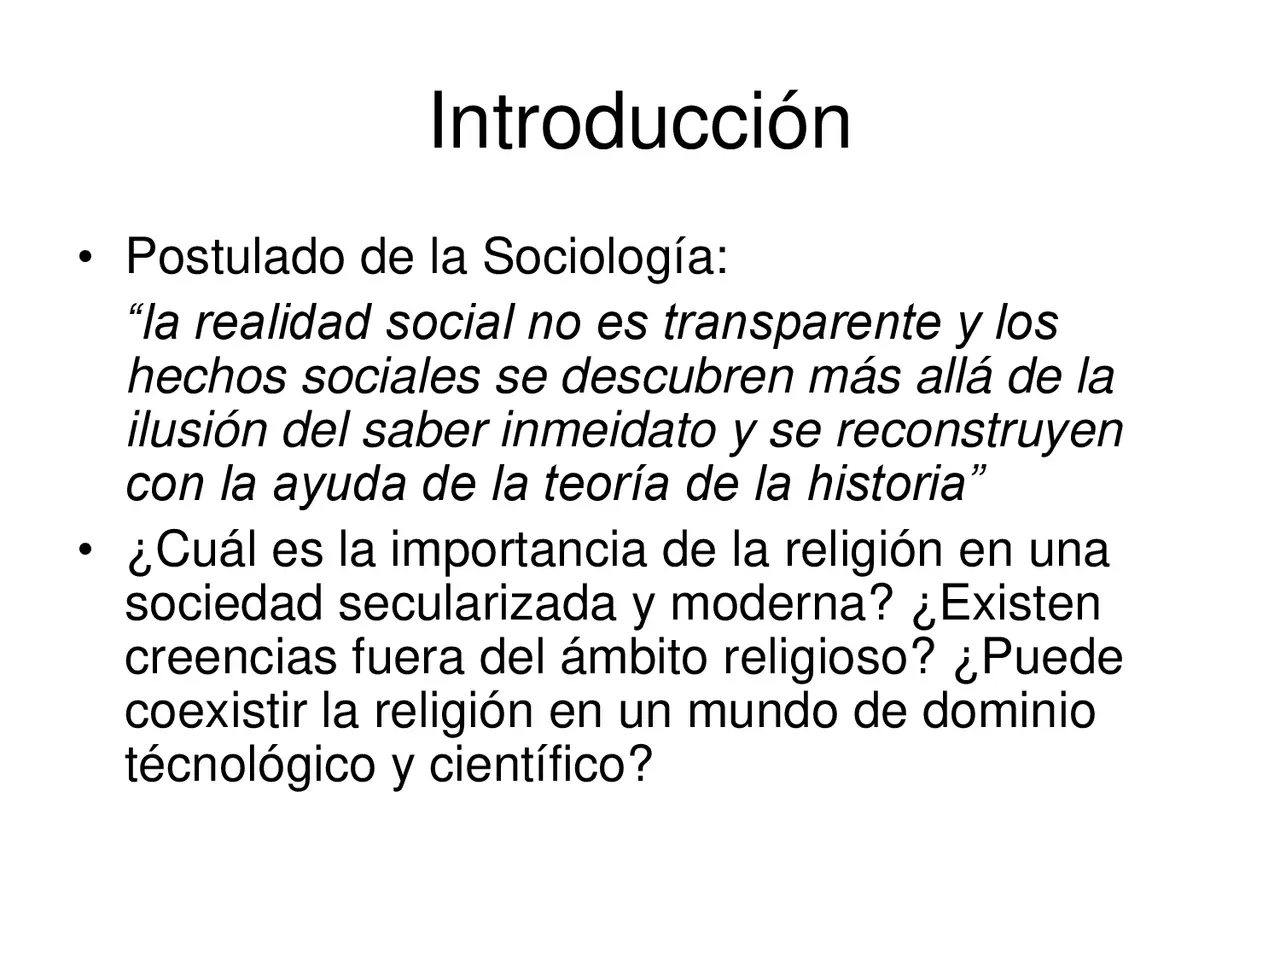 sociologia de la religion resumen - Qué dice Durkheim de la religión